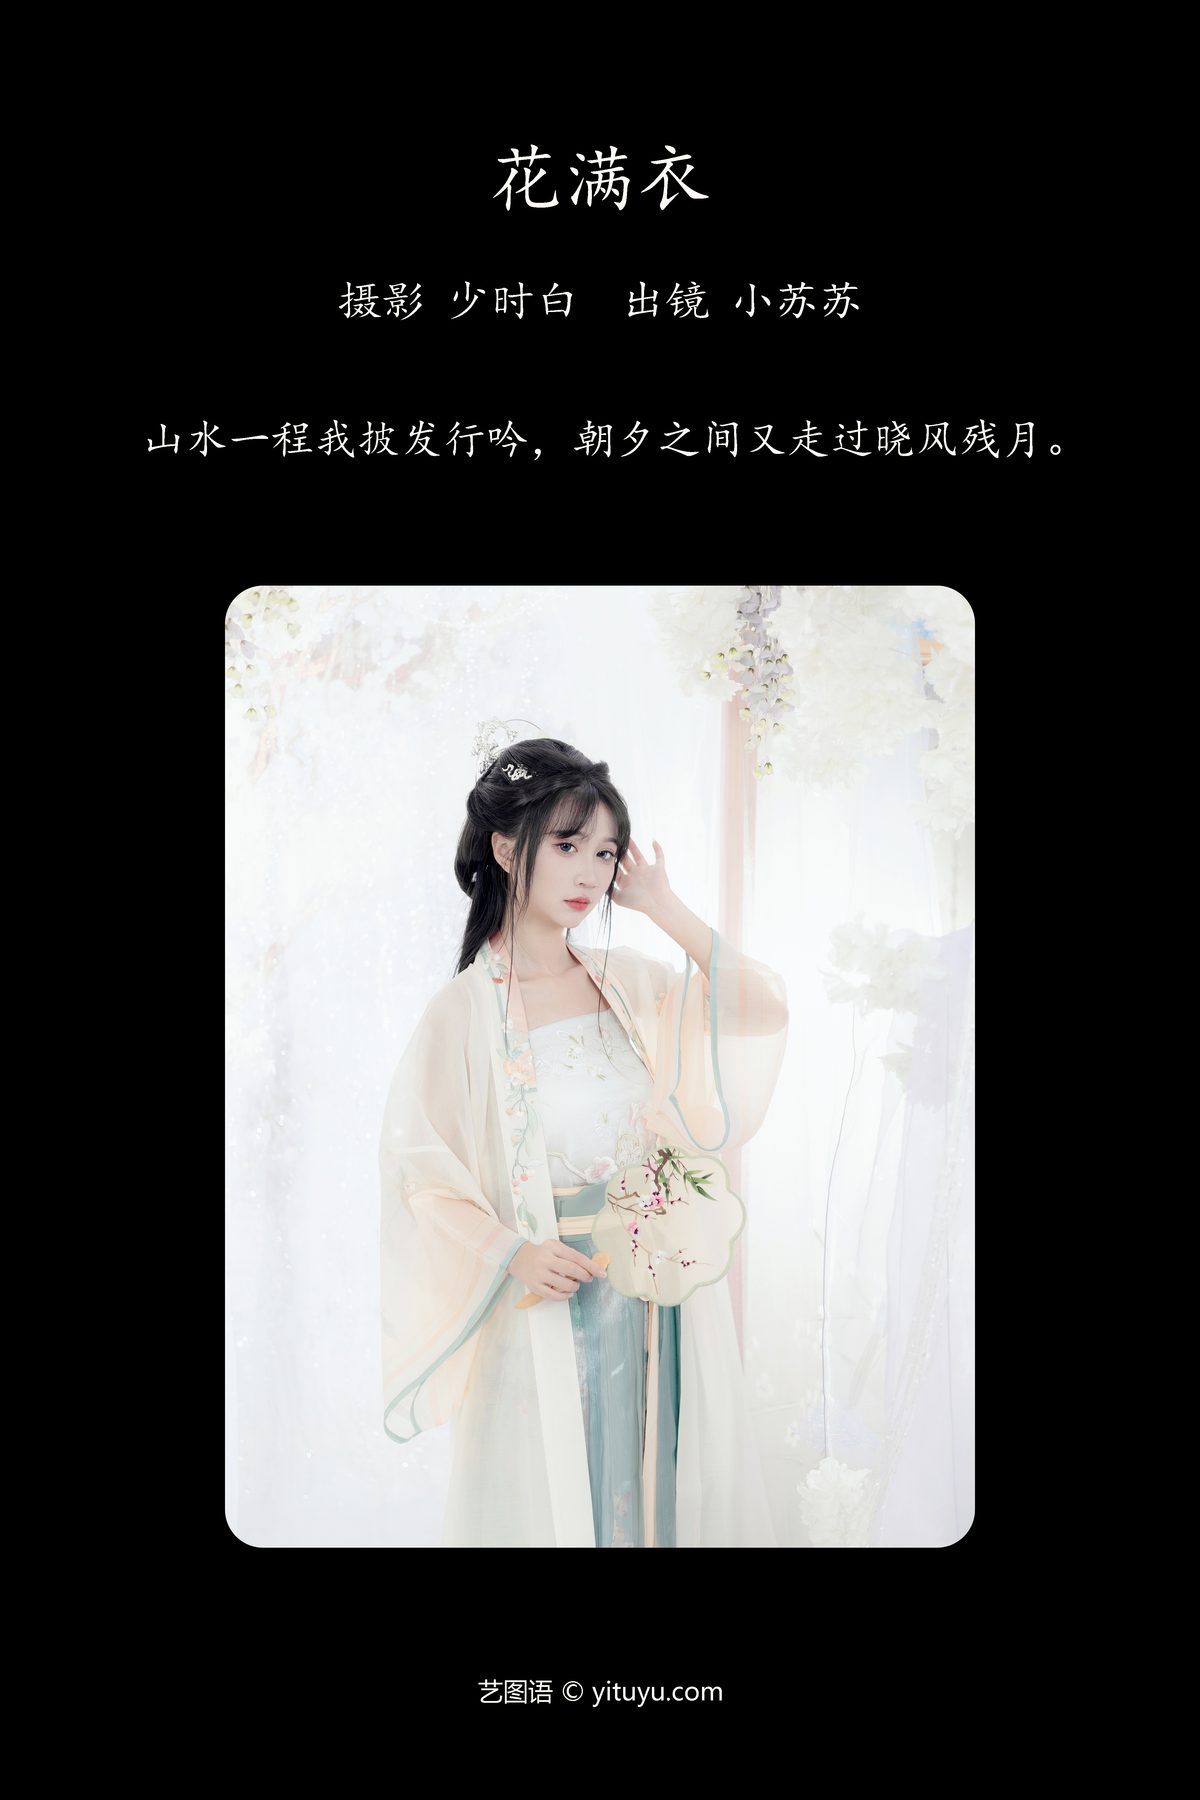 YiTuYu艺图语 Vol 5463 Qi Luo Sheng De Xiao Su Su 0002 8885513845.jpg